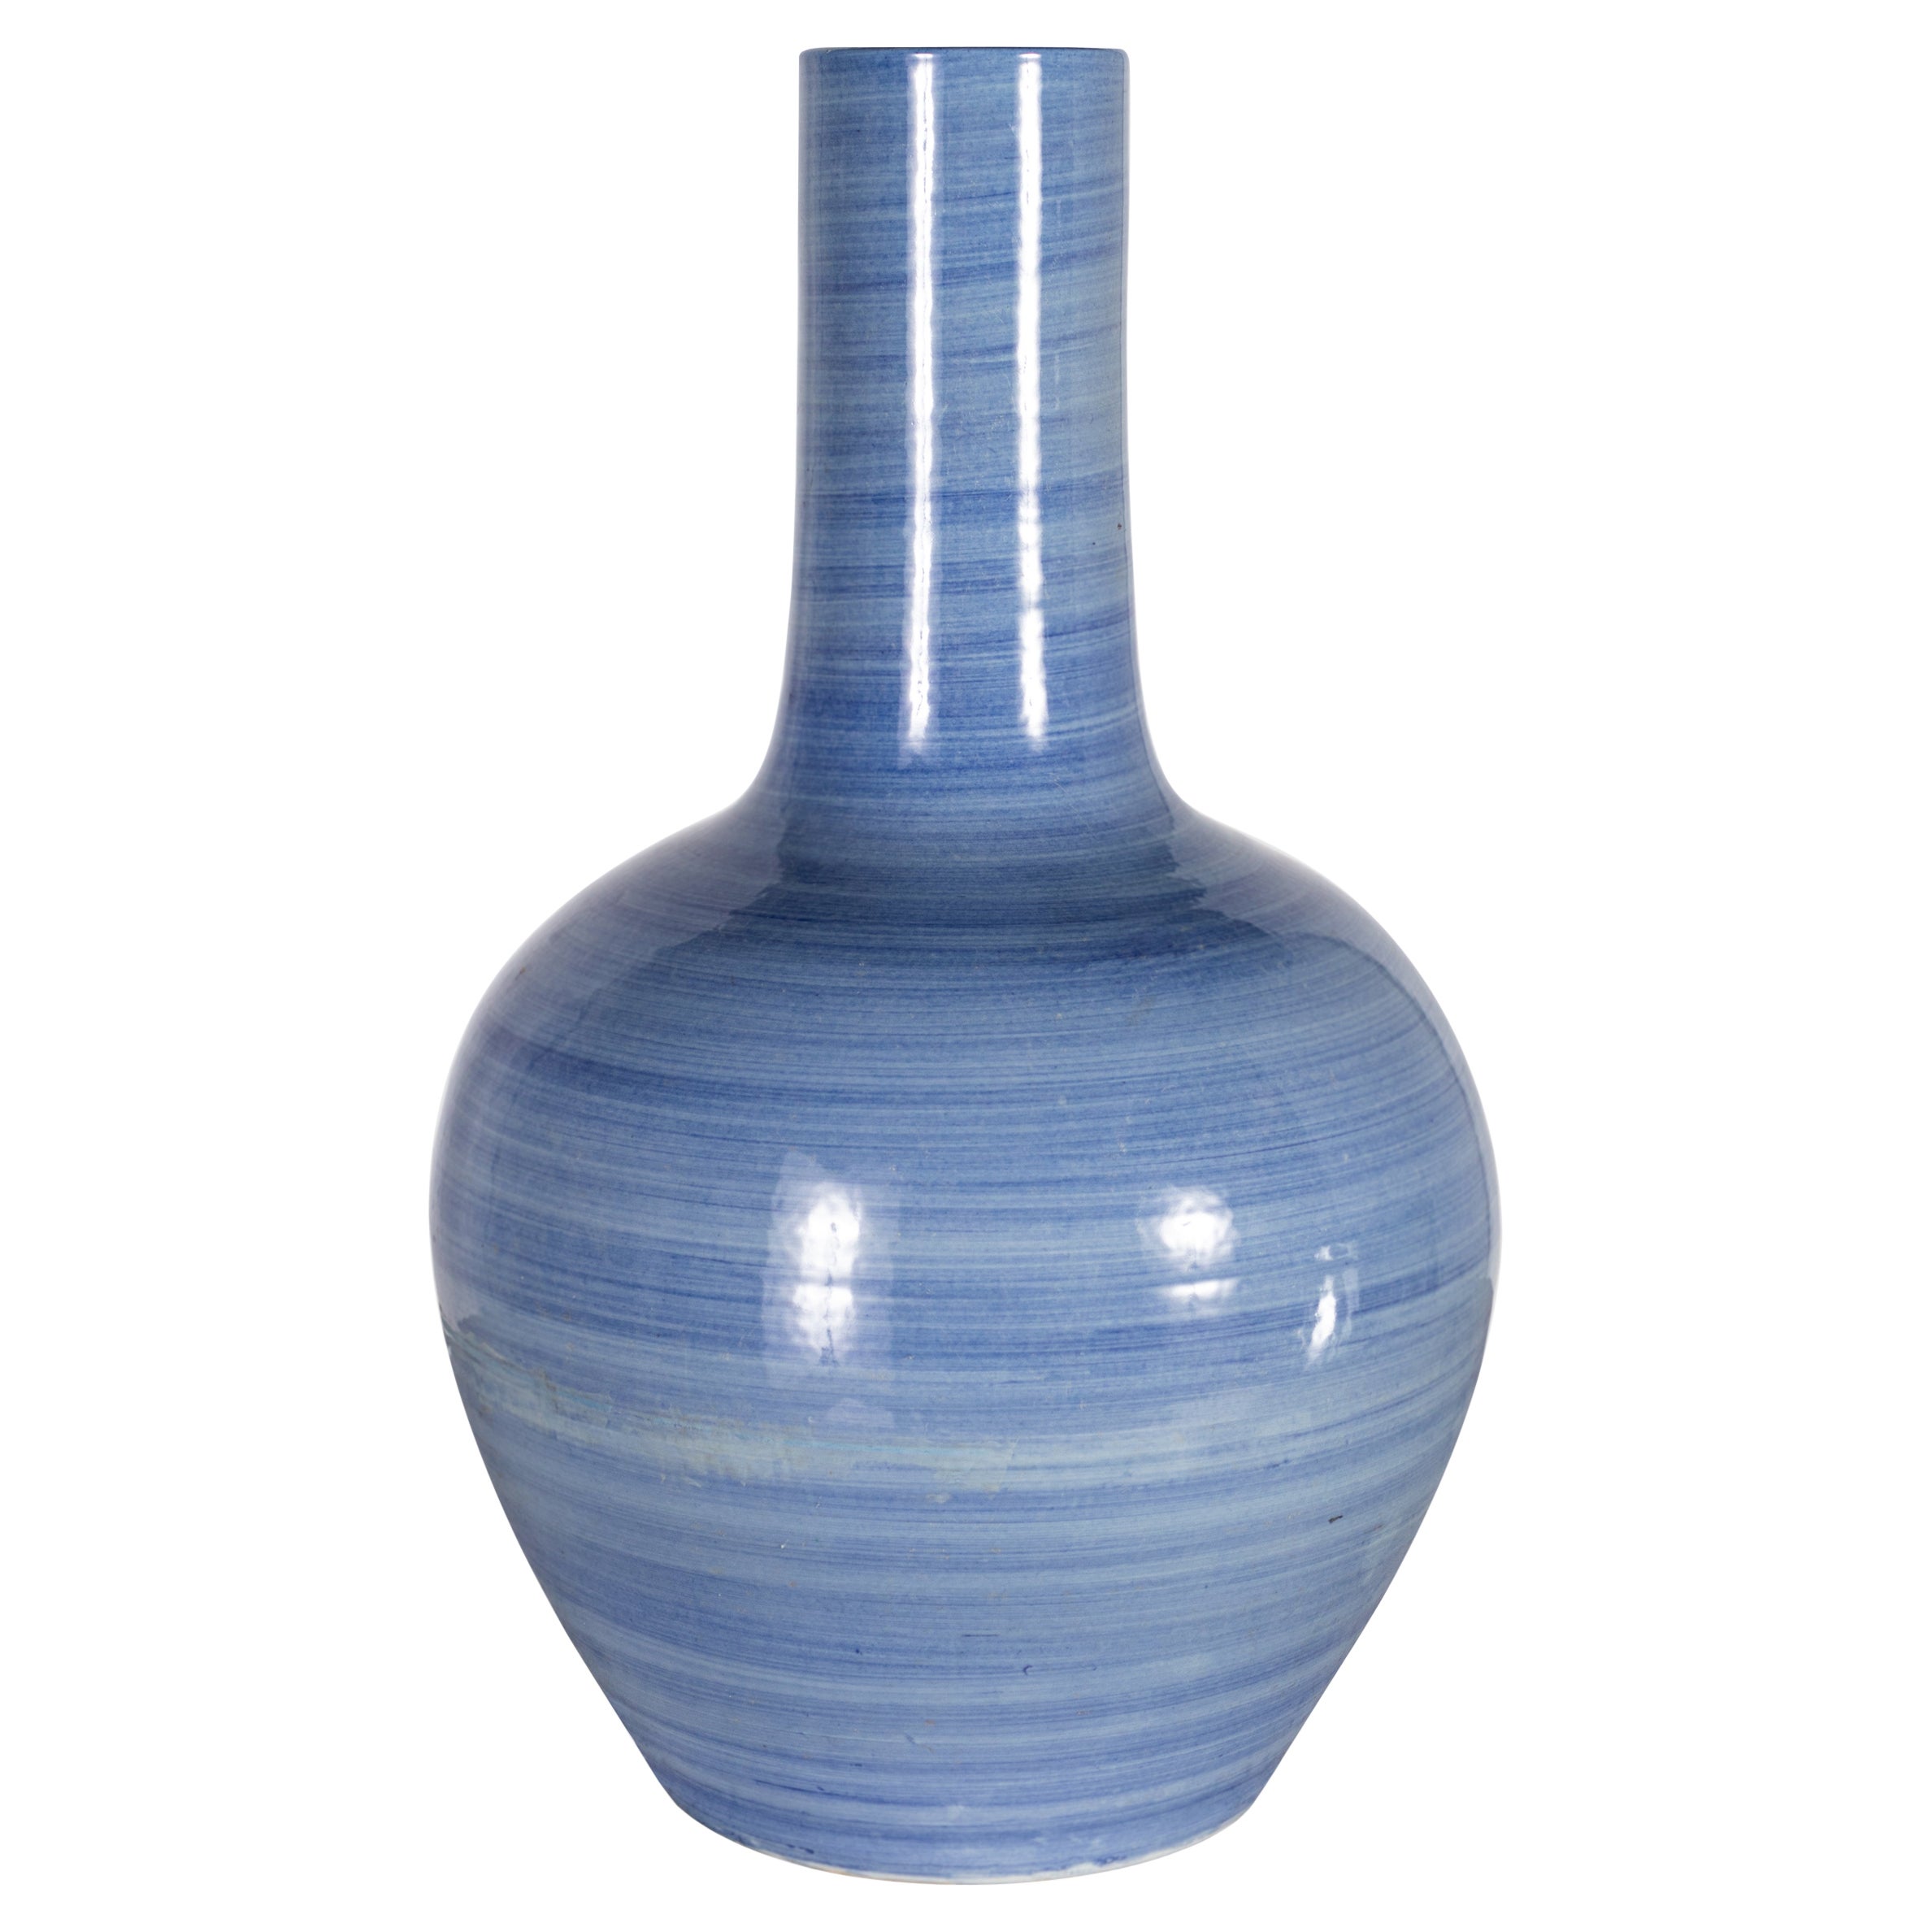 Double Wall Globular Vase For Sale